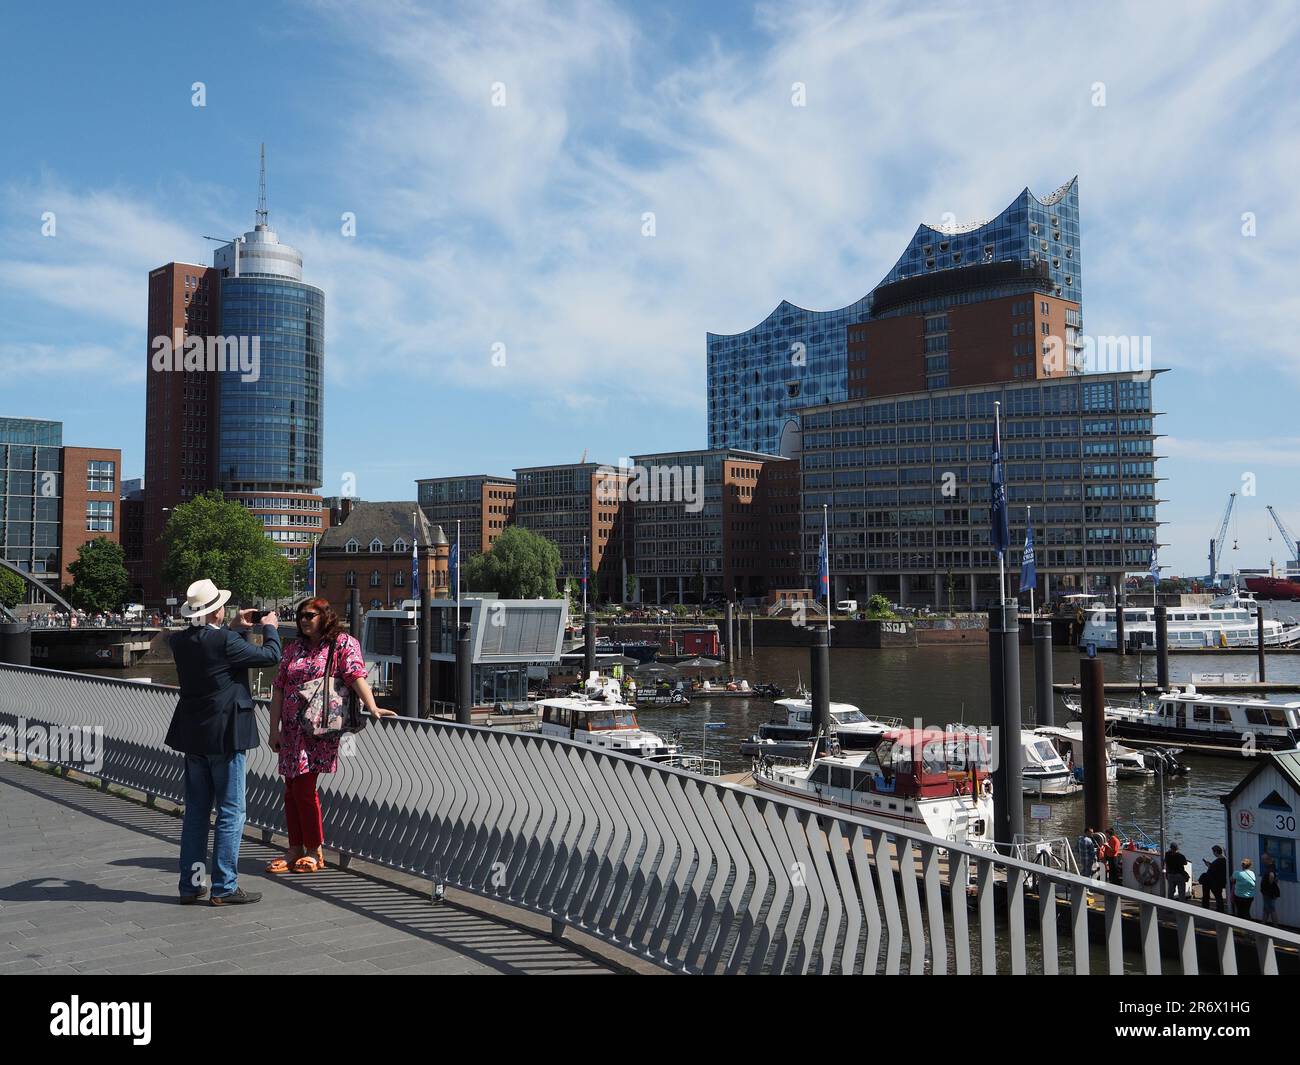 Ein Paar genießt eine Reise nach Hamburg, Deutschland am Ufer der Elbe mit dem berühmten Elbphilharmonie-Gebäude im Hintergrund Stockfoto